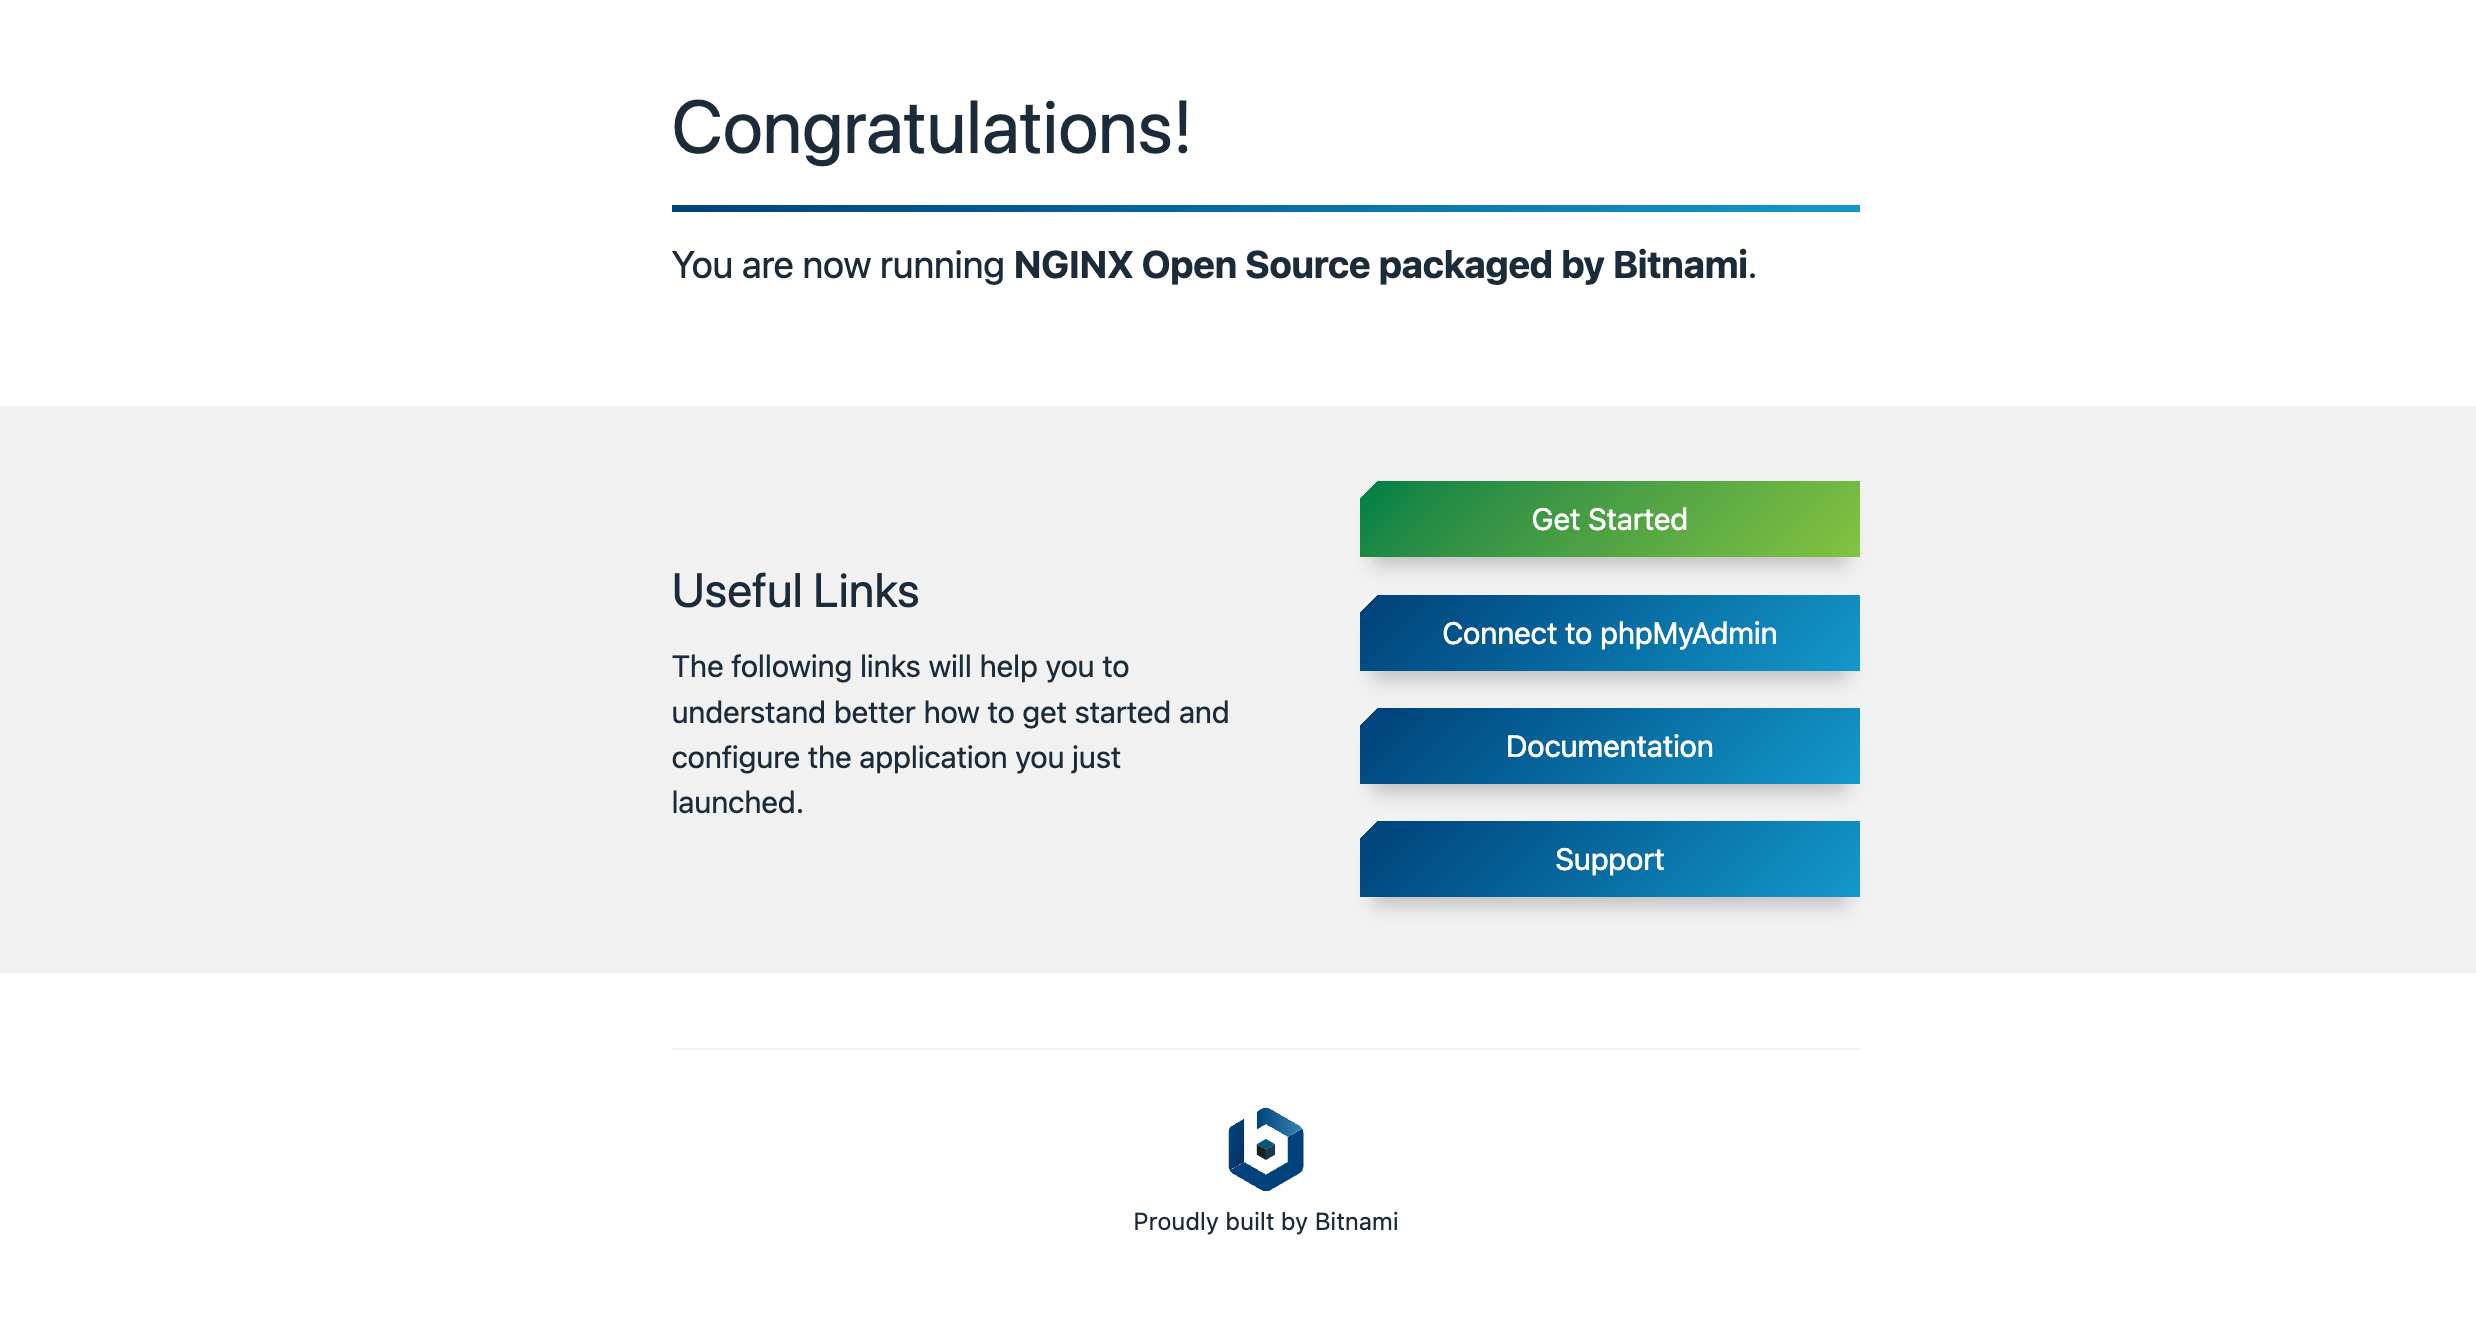 La ventana emergente “Congratulations!” con la notificación “You are now running Bitnami Nginx 1.10.0-2 in the Cloud”.